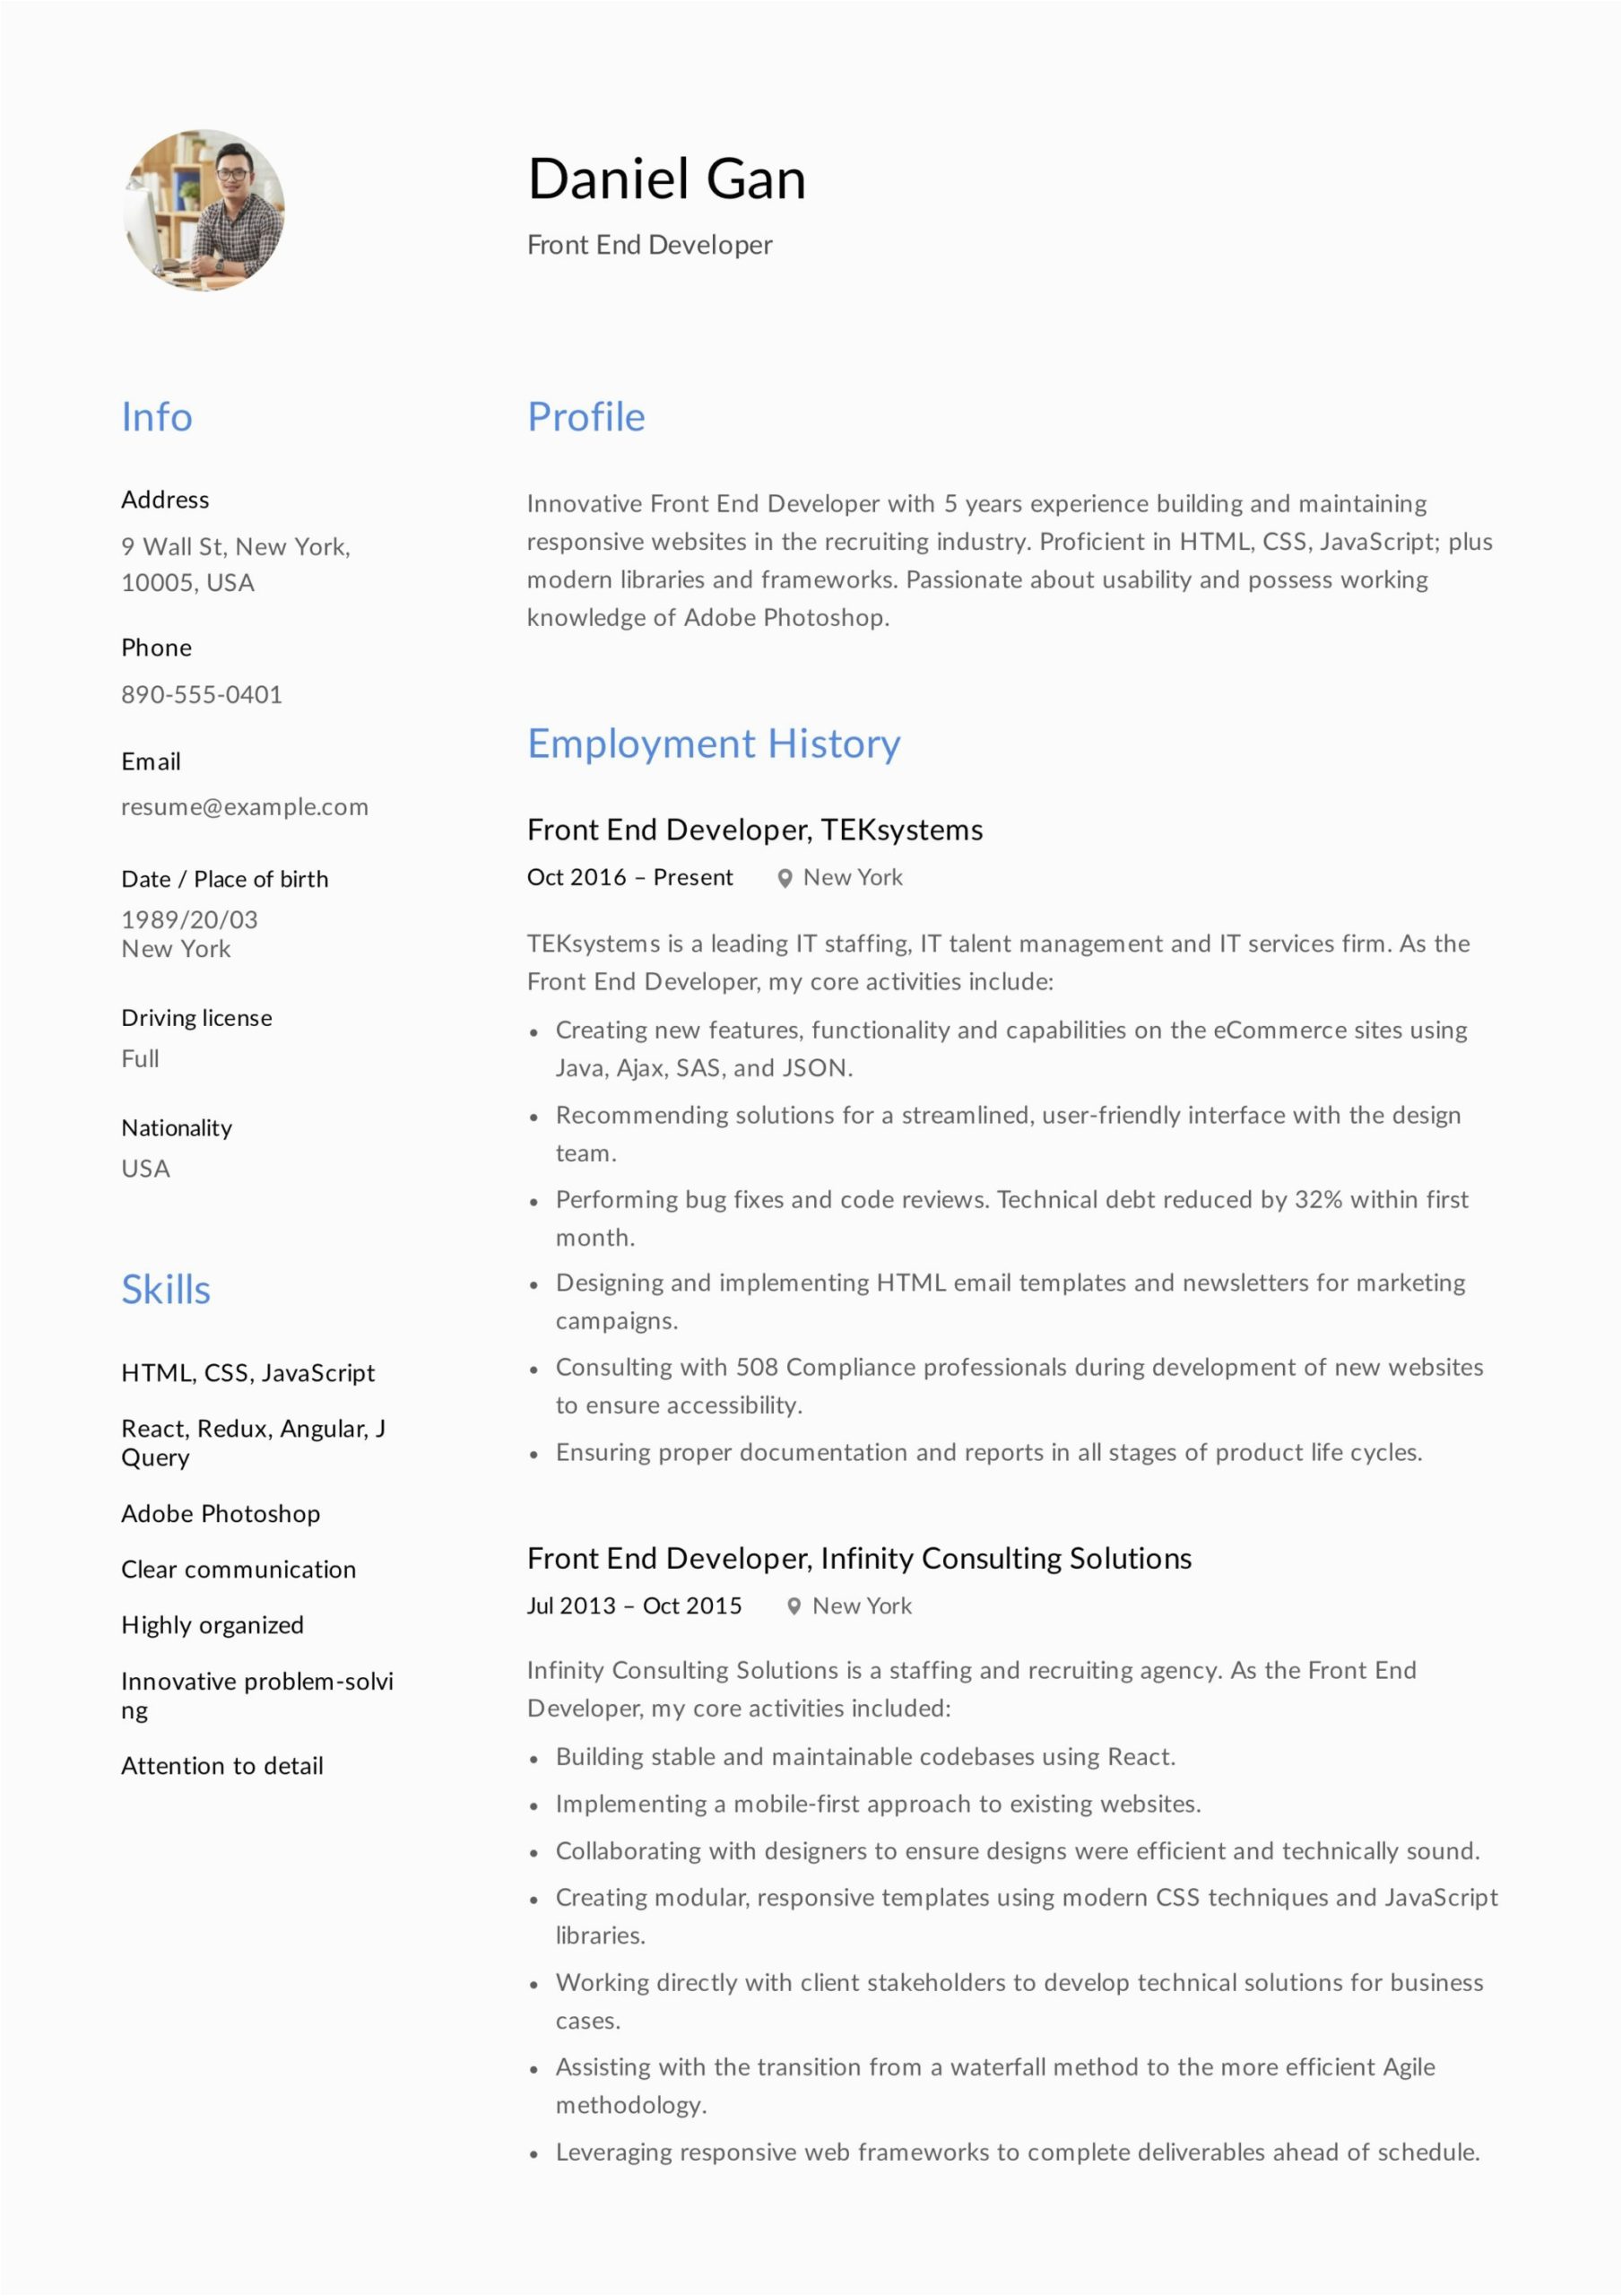 Front End Developer Job Resume Samples 17 Front End Developer Resume Examples & Guide Pdf